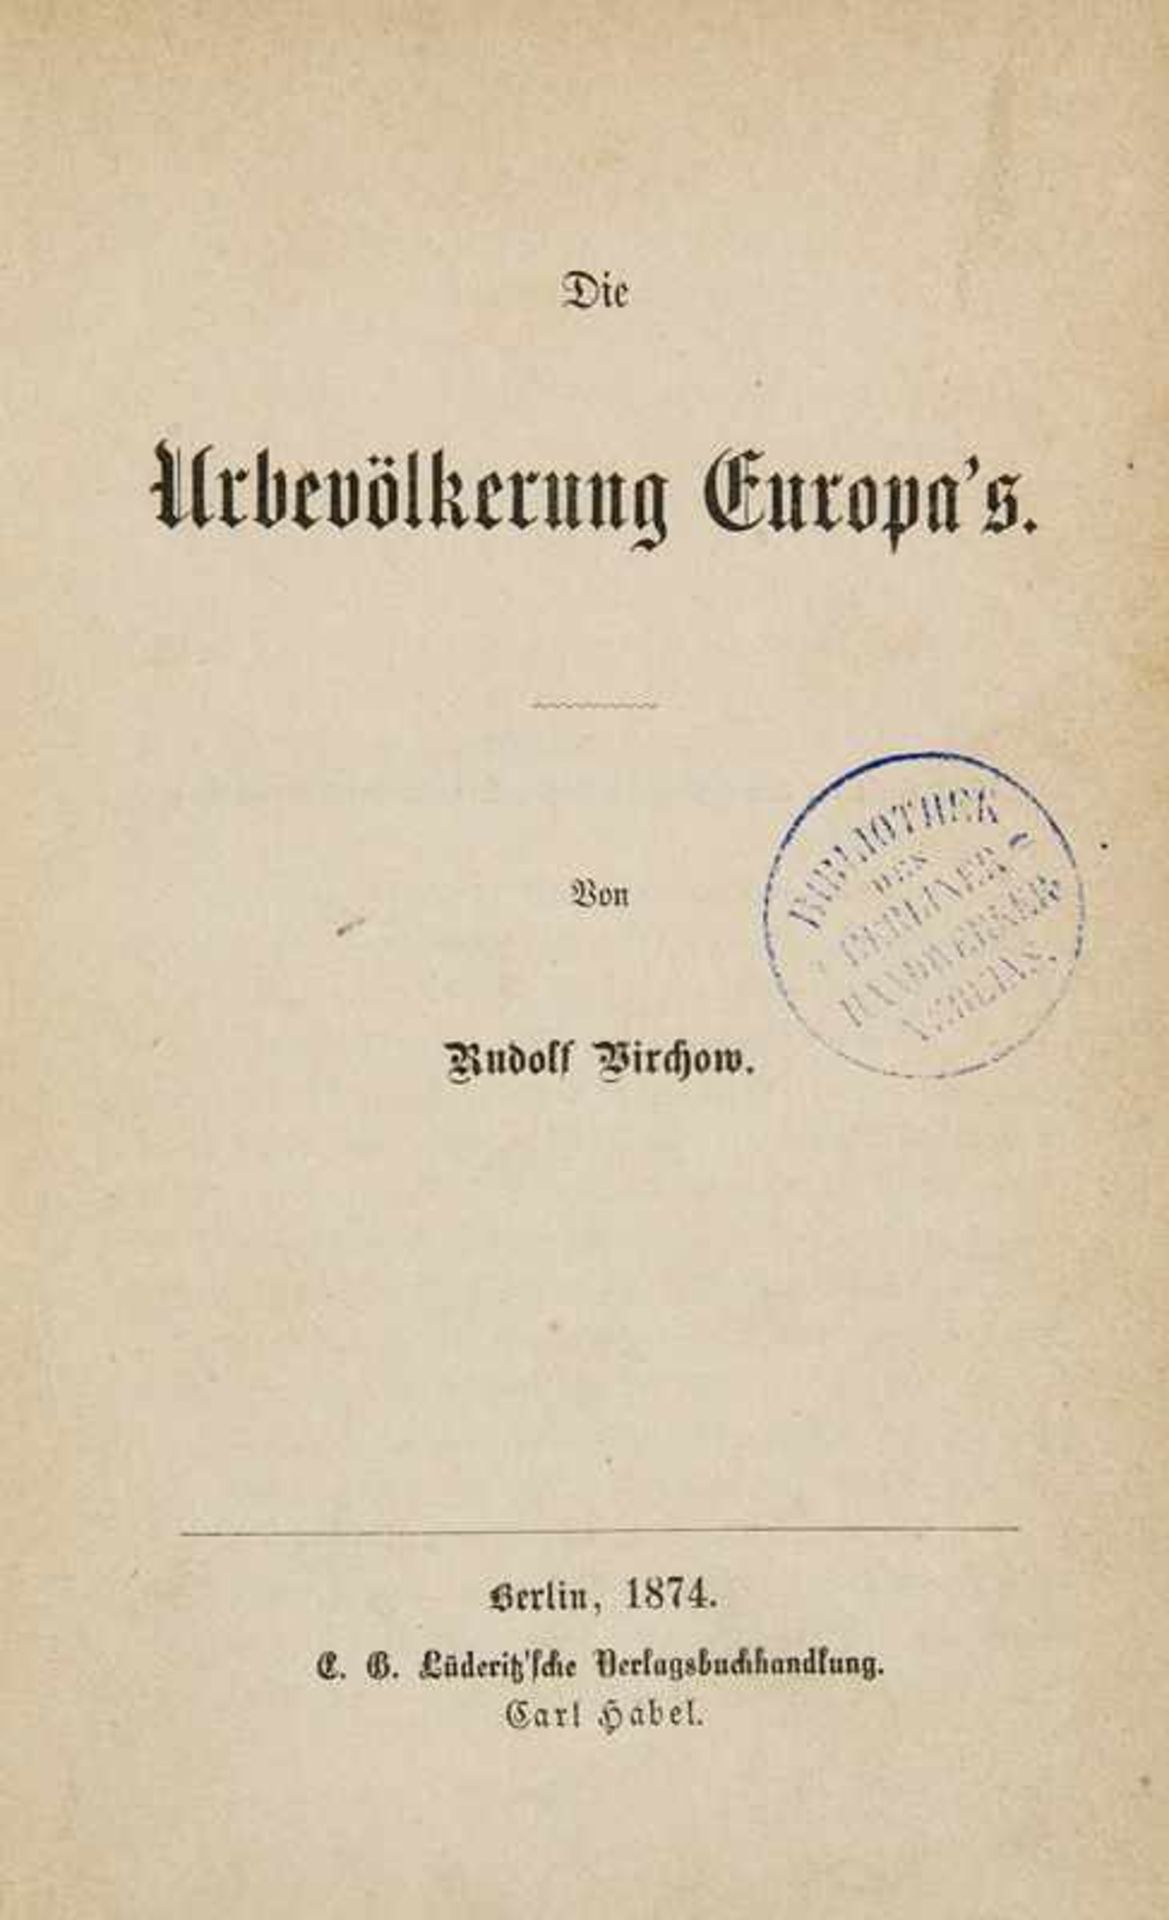 *Virchow, RudolfDie Urbevölkerung Europa's. Berlin, C. Habel, 1874. 48 S. 8°. HLdr. d. Zt. mit